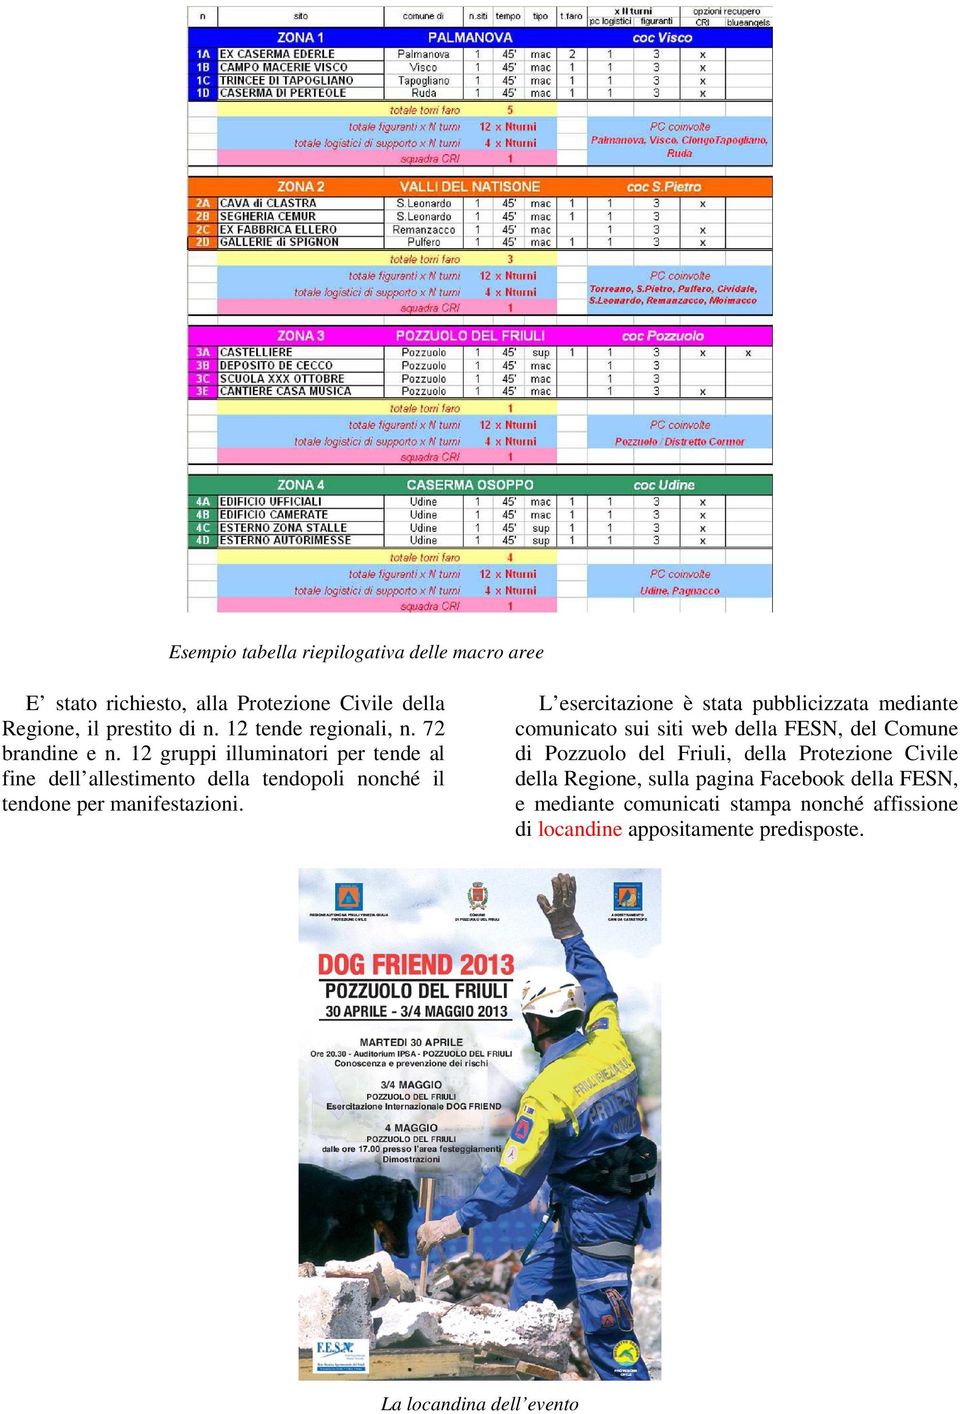 L esercitazione è stata pubblicizzata mediante comunicato sui siti web della FESN, del Comune di Pozzuolo del Friuli, della Protezione Civile